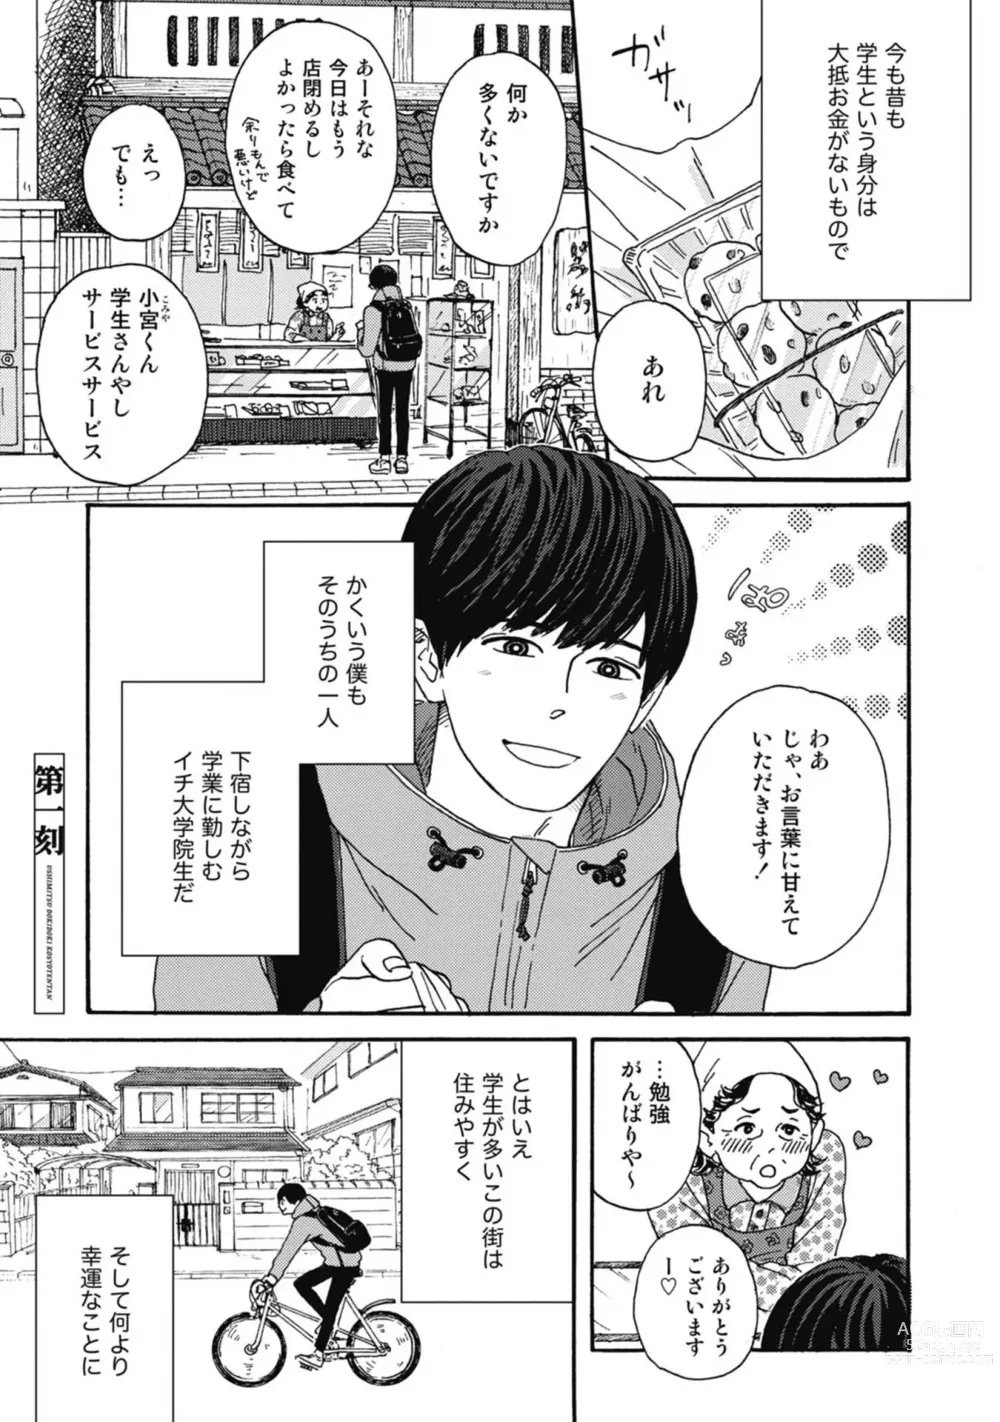 Page 7 of manga Ushimitsu Dokidoki Kosyotentan